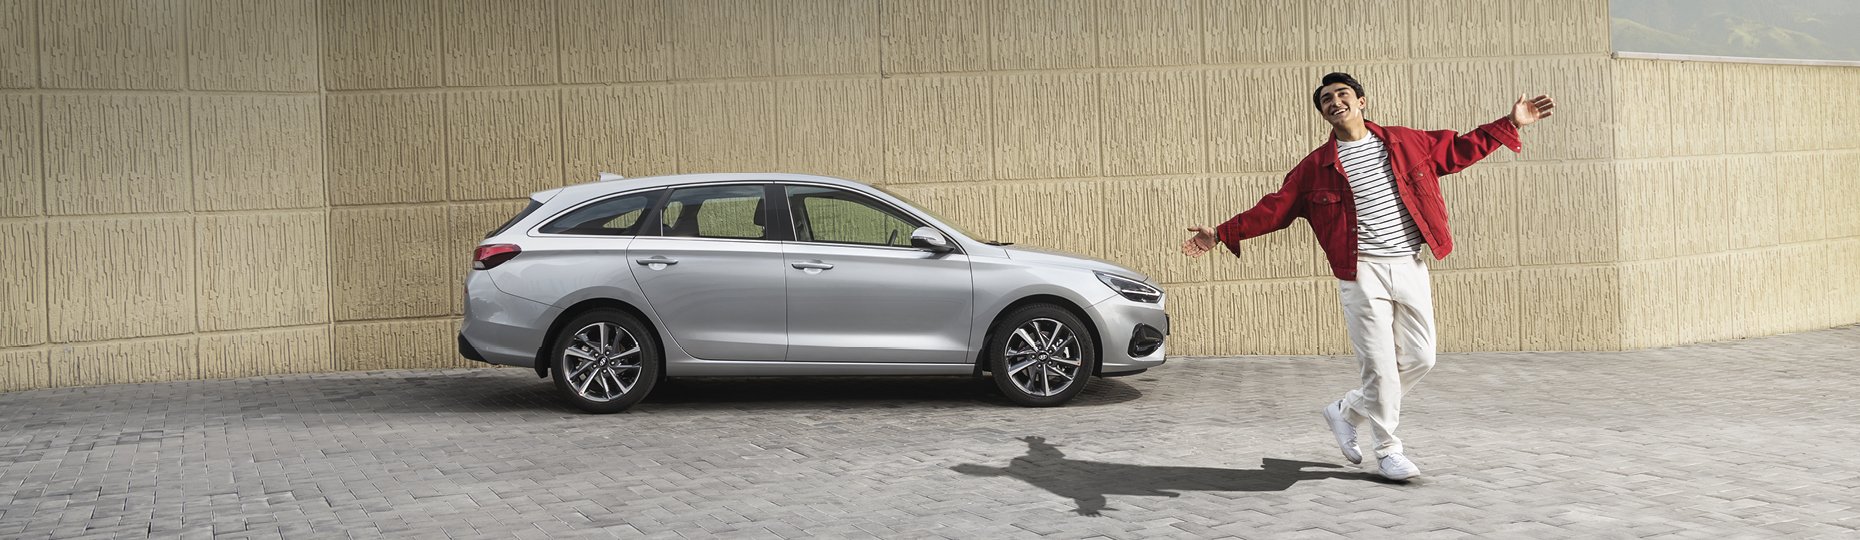 Безопасность новой Hyundai i30 | Официальный дилер в Шымкенте